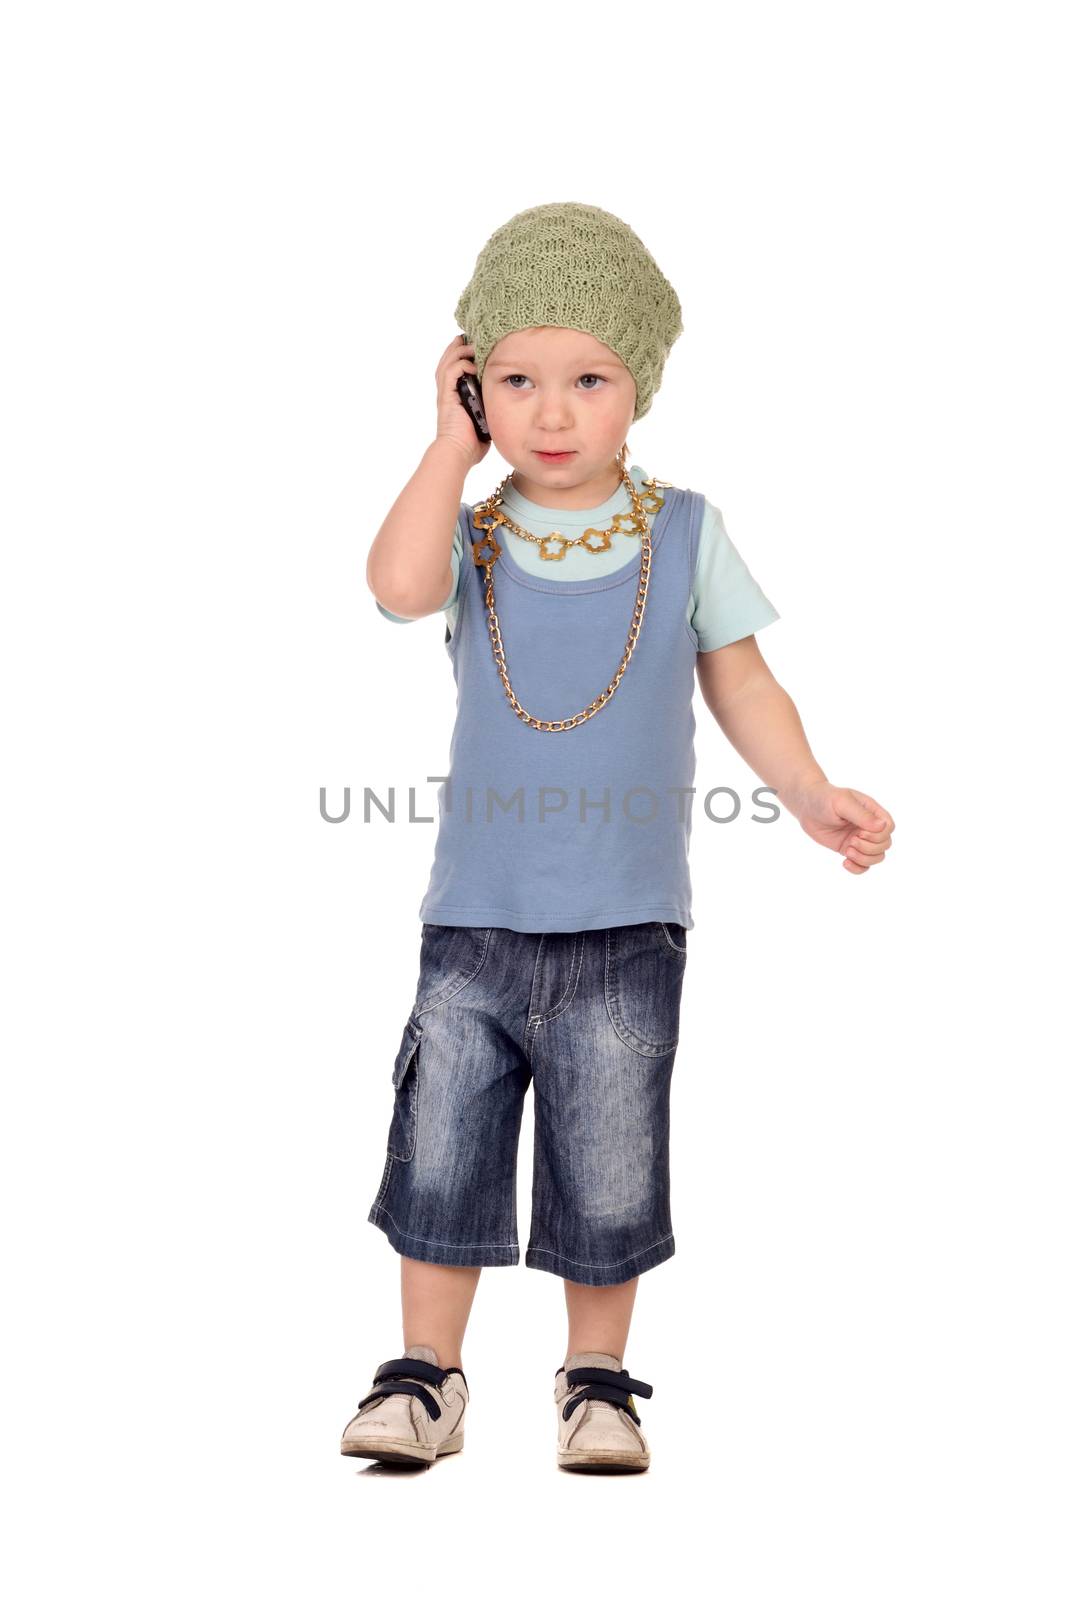 Little boy talking by the phone by dedmorozz